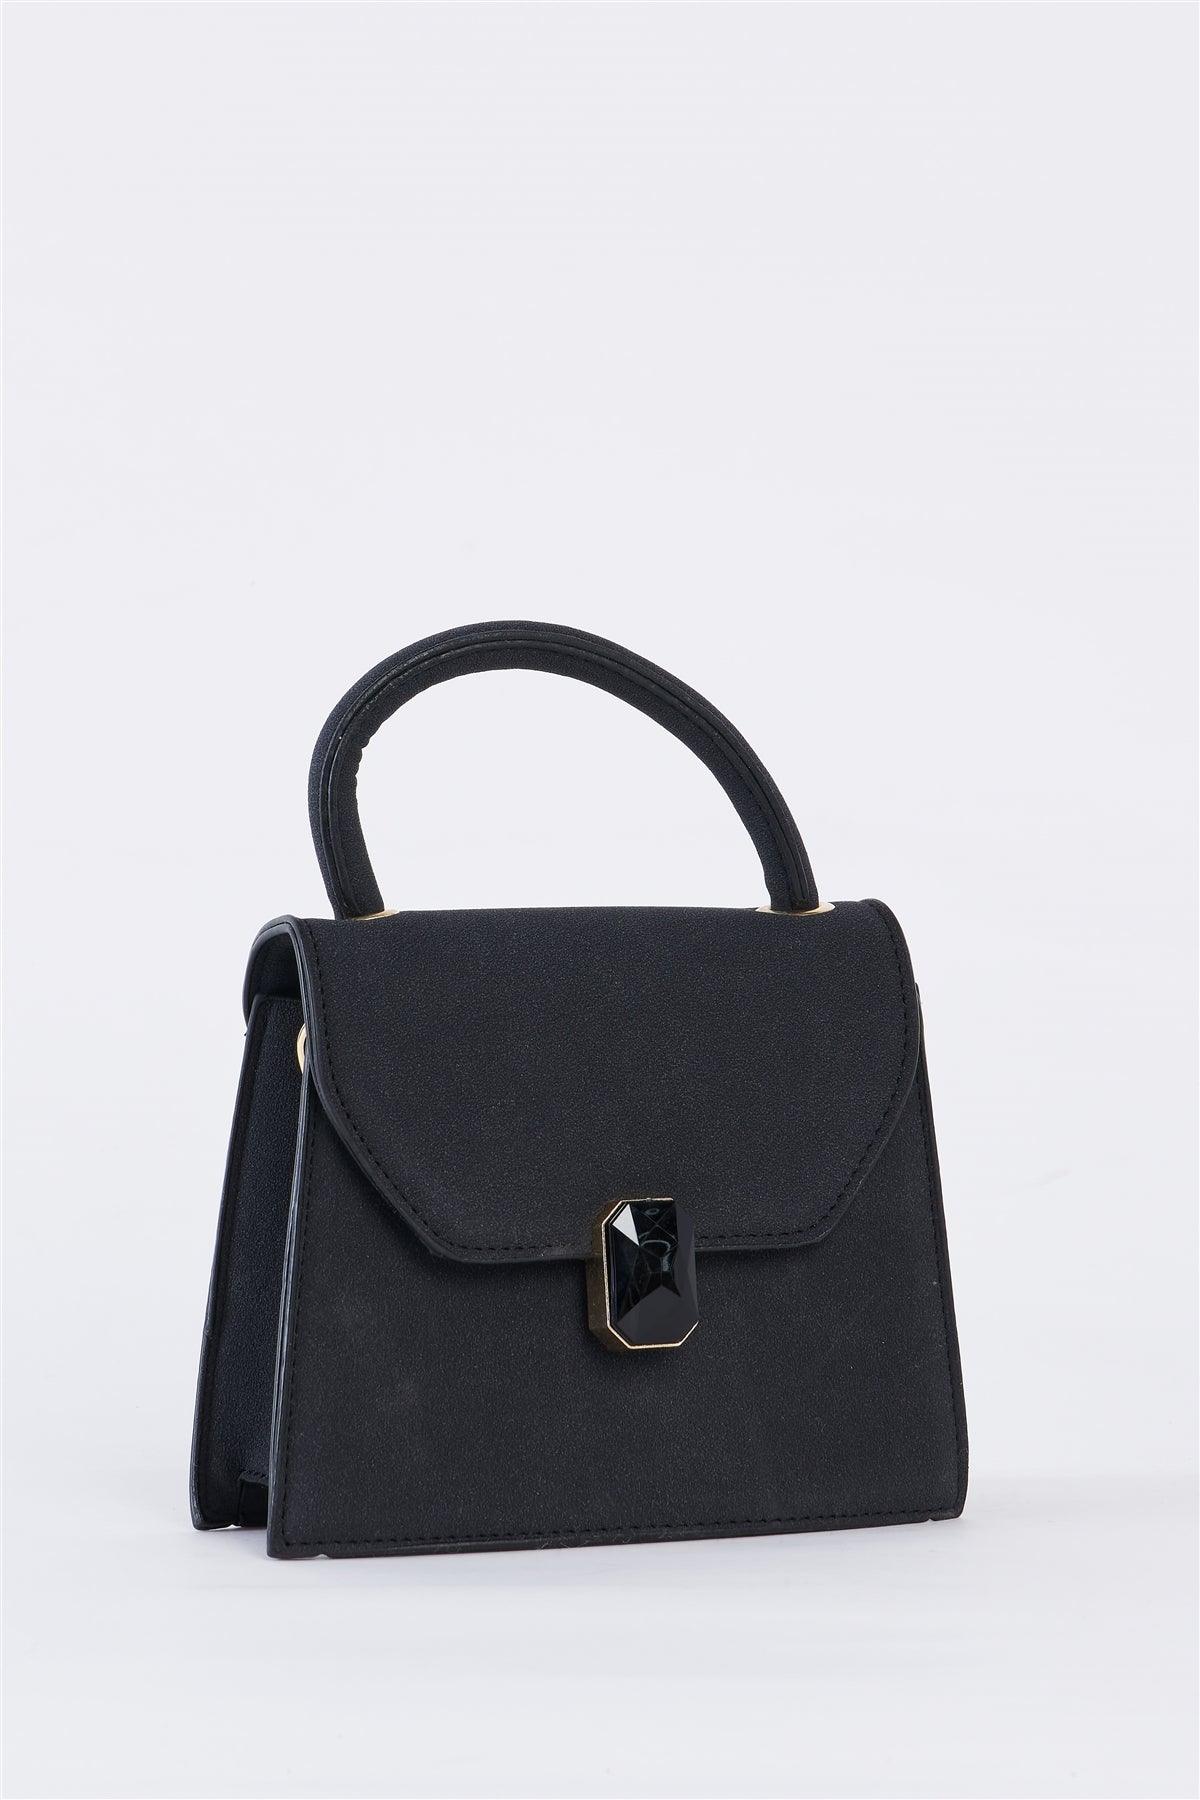 Black Vintage Inspired Purse With Gem Closure Detail /1 Bag